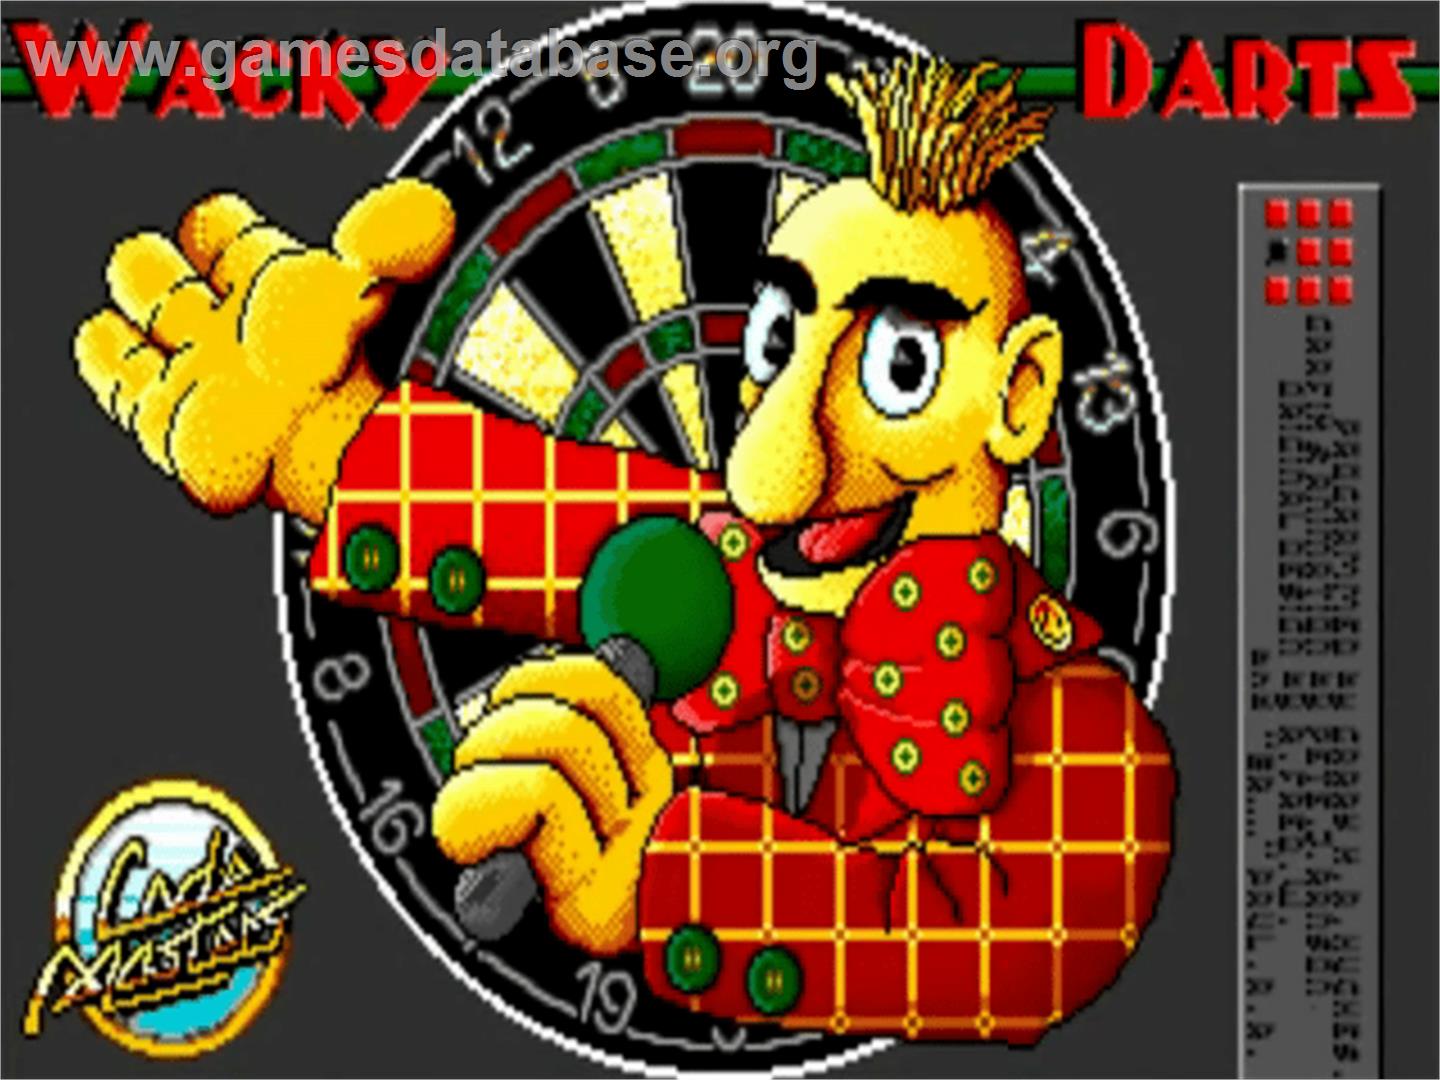 Wacky Darts - Commodore Amiga - Artwork - Title Screen